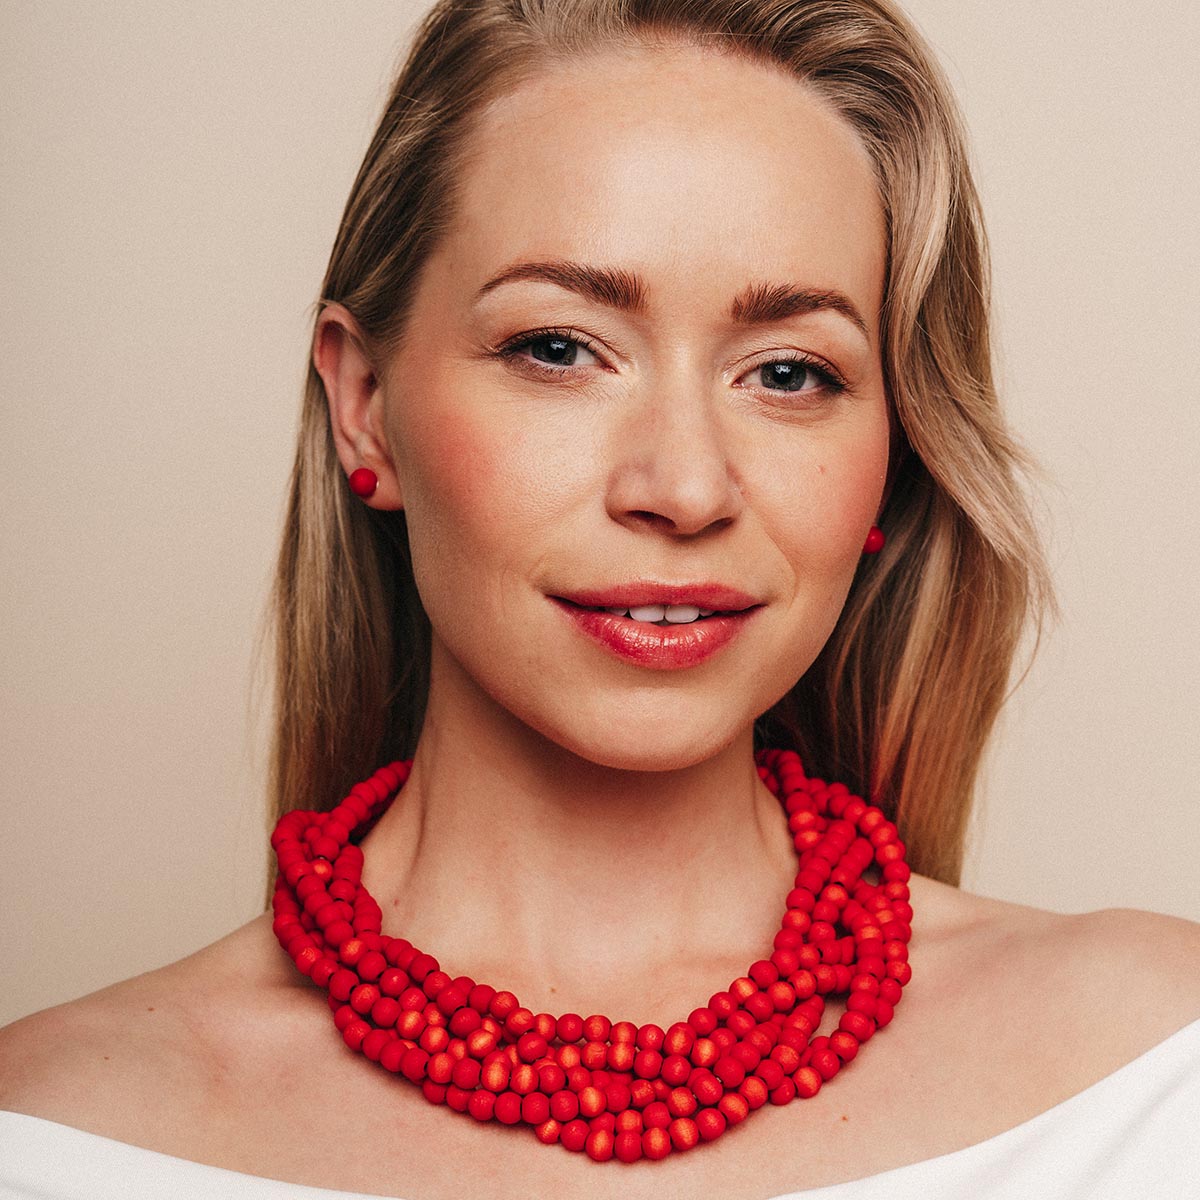 Elisabeth necklace, red